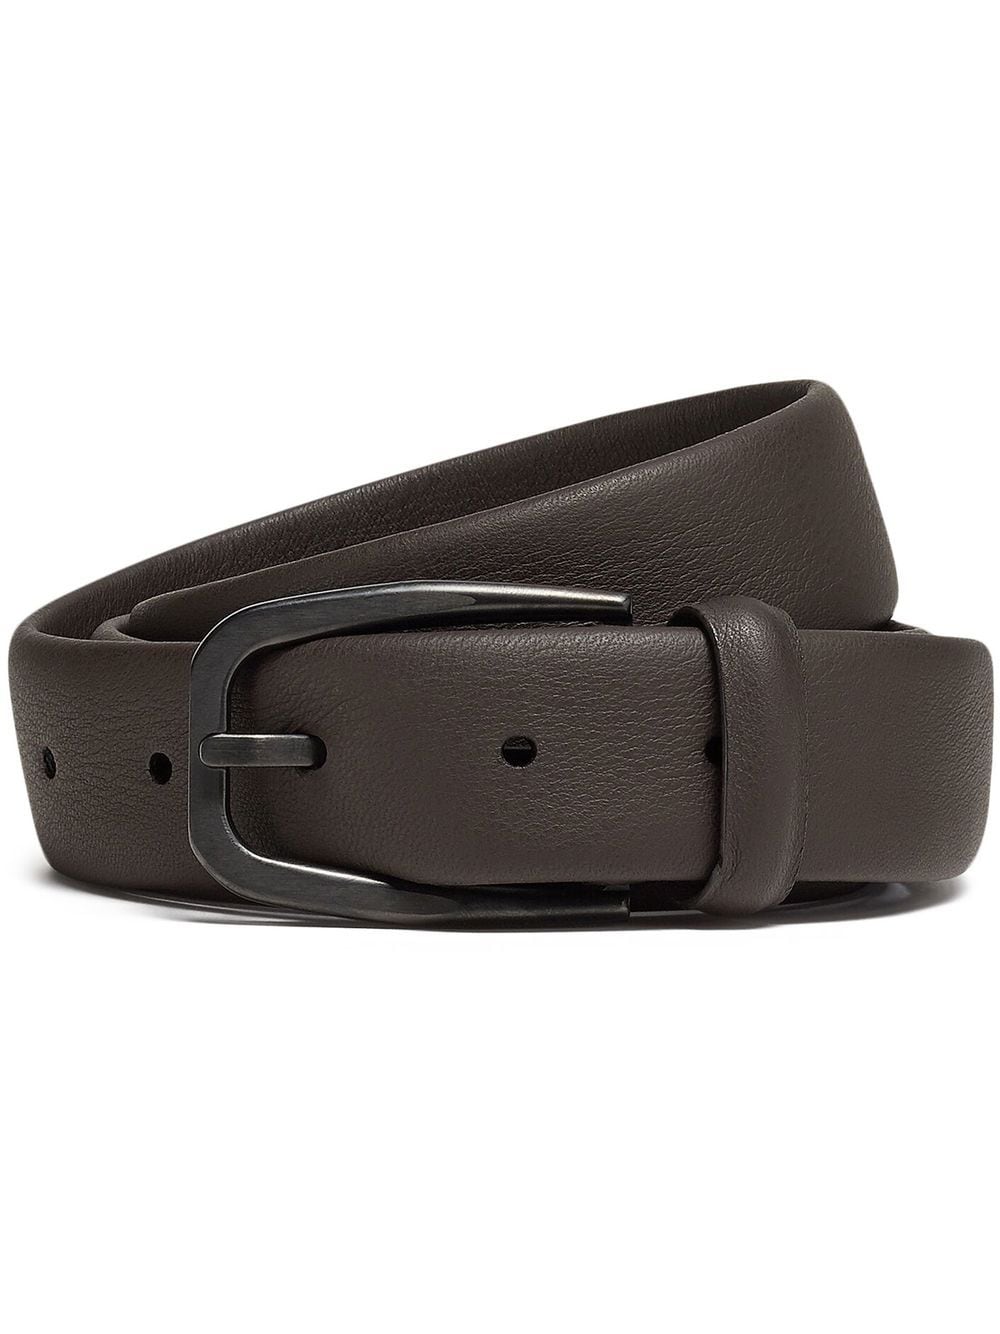 Zegna Leather Buckle Belt In Dark Brown